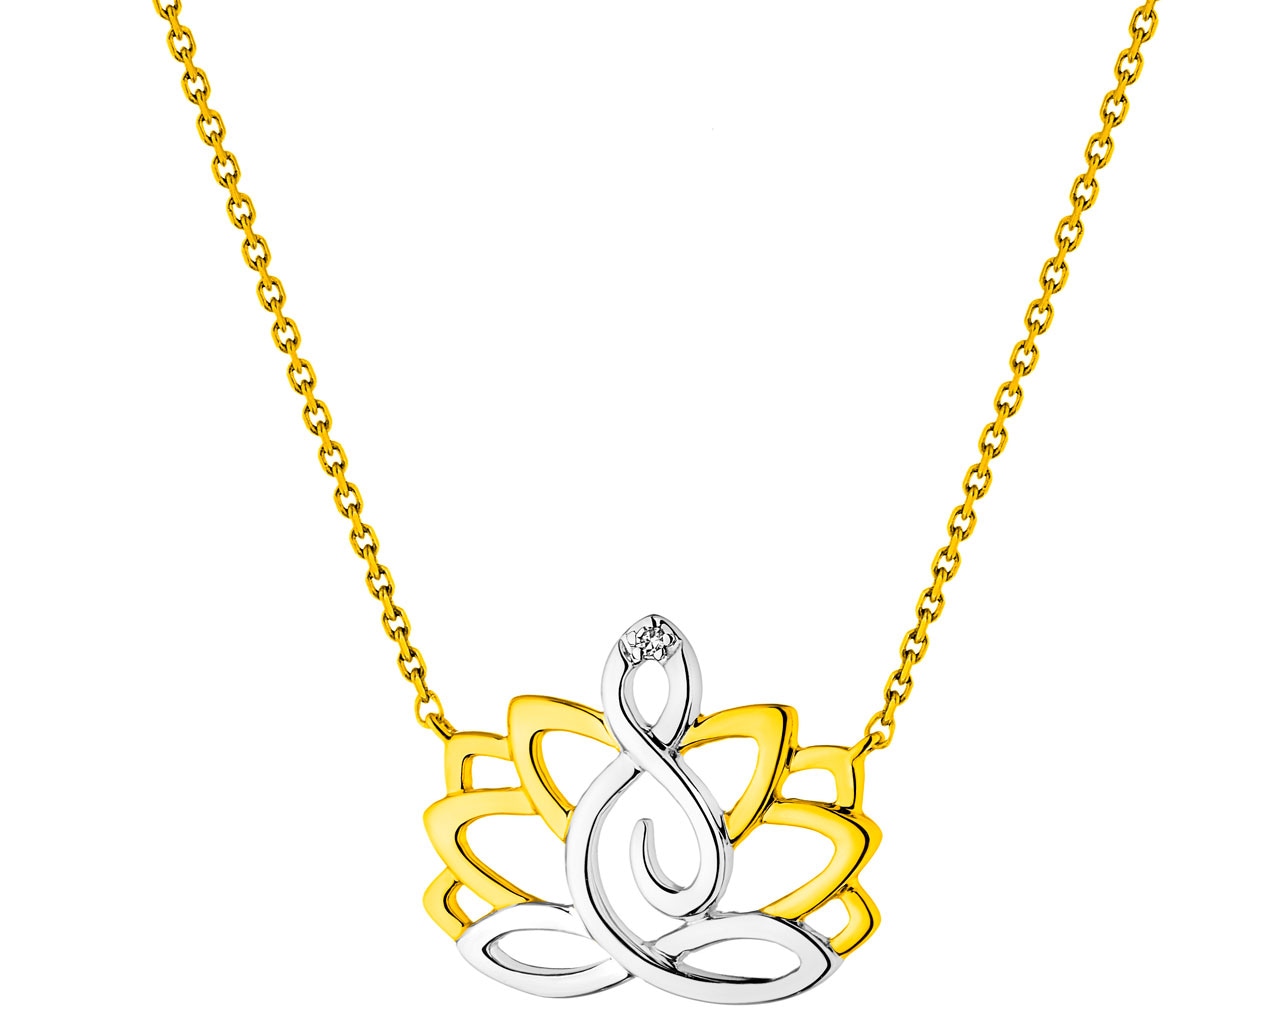 Naszyjnik z żółtego złota z diamentem - kwiat lotosu 0,004 ct - próba 375